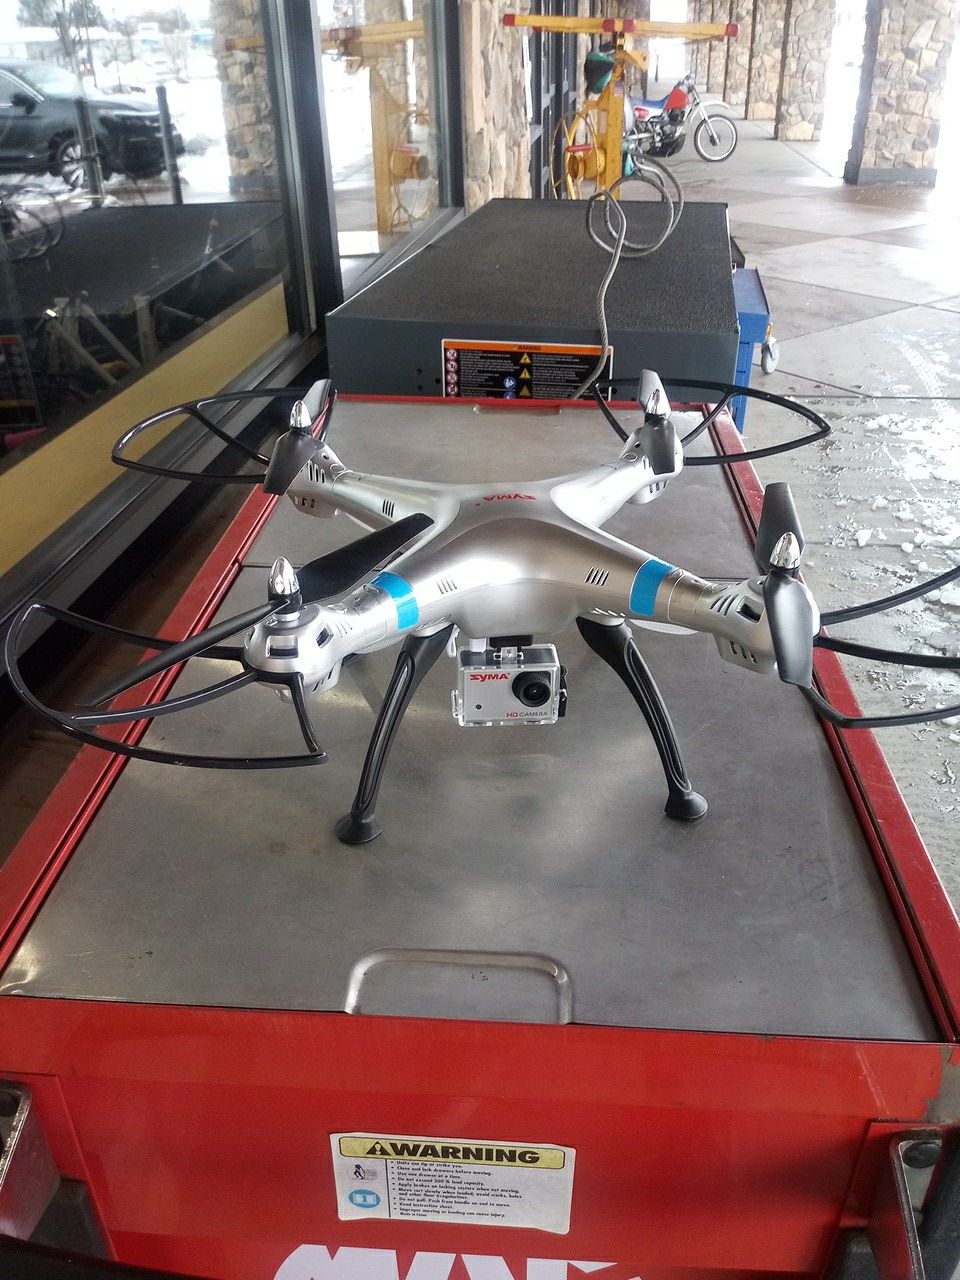 Syma X8hg drone